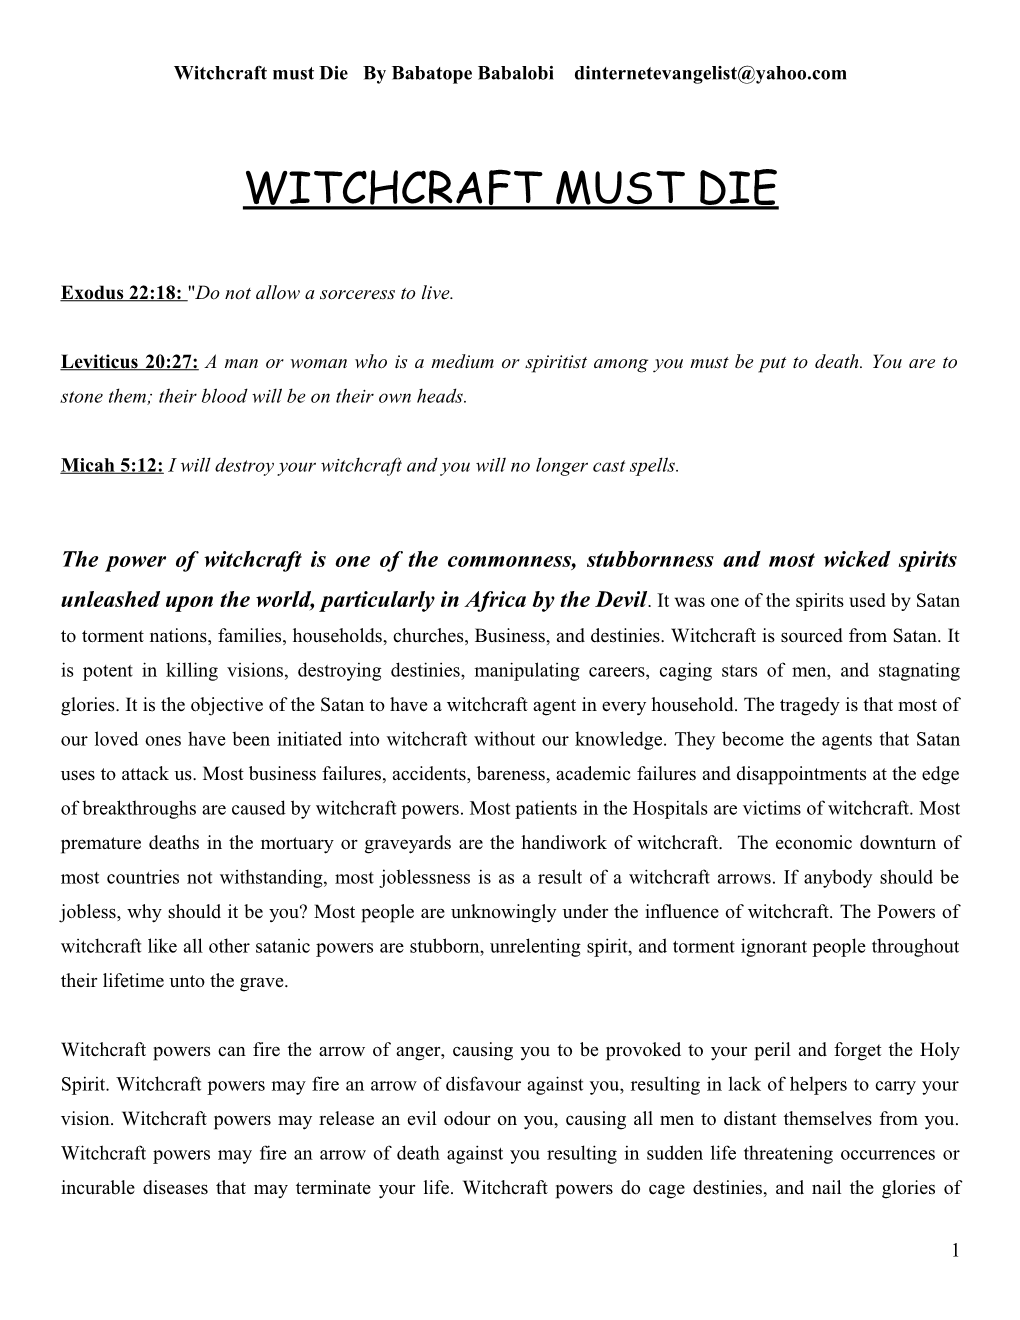 Witchcraft Must Die